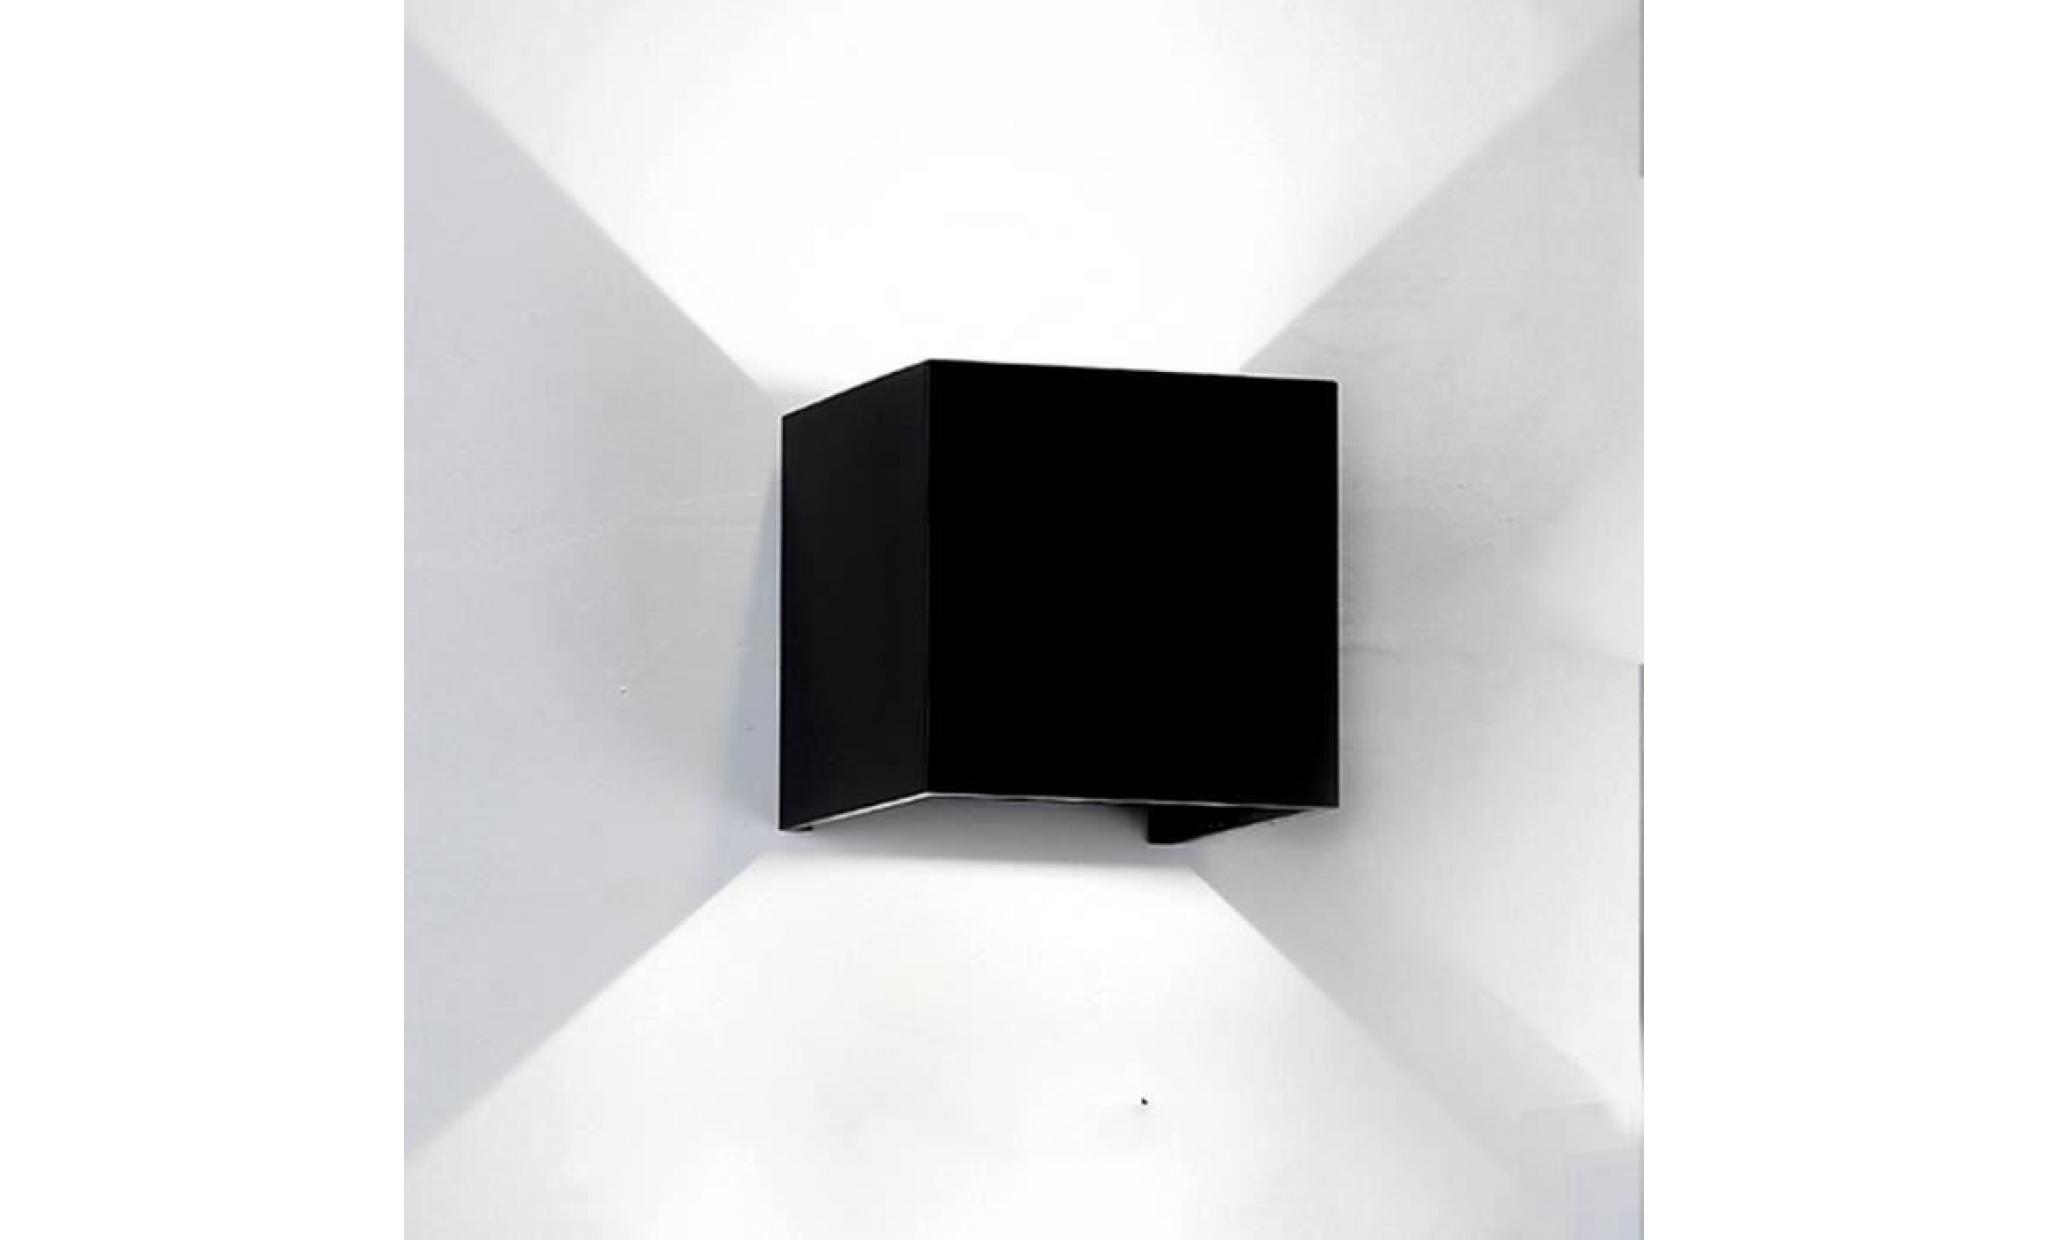 2pcs étanche 7w aluminium cube cob led lampe de la lampe de mur applique murale de décoration ac 110 220v blanc froid